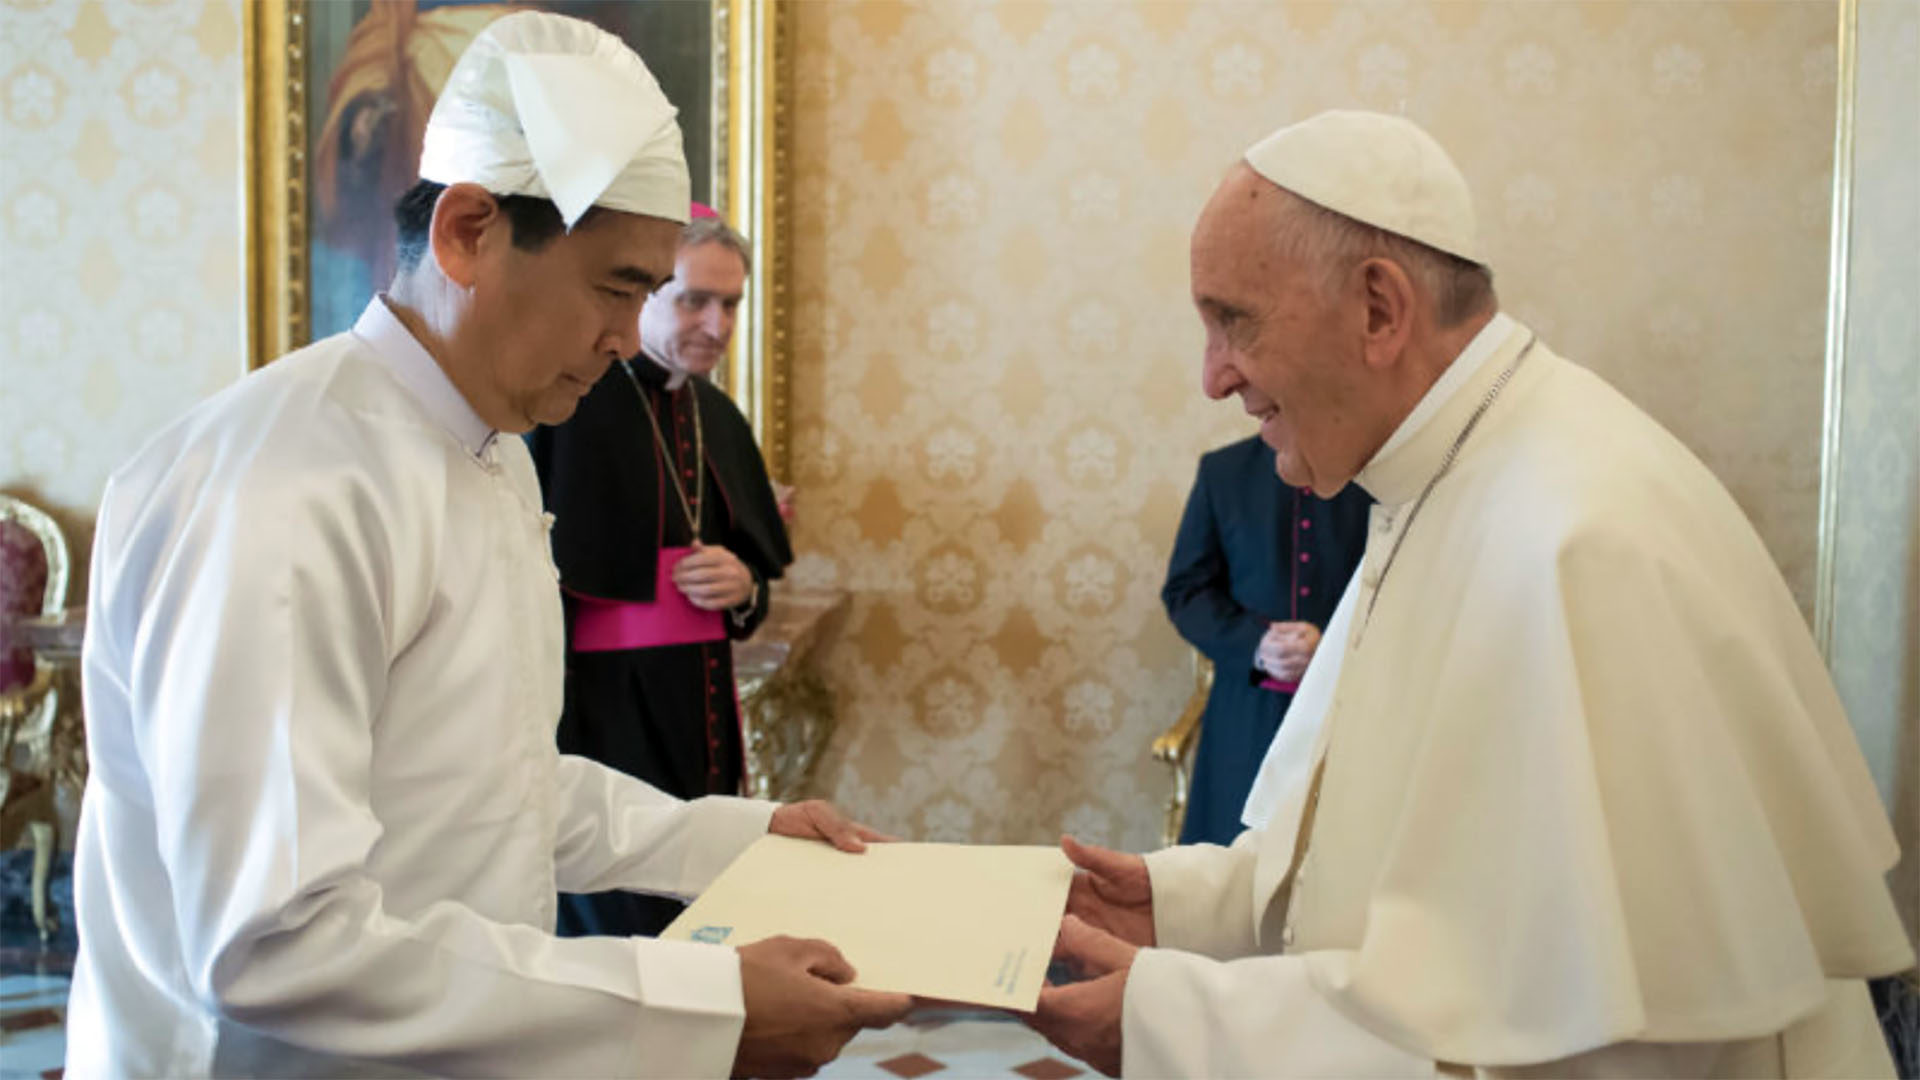 San Lwin, premier ambassadeur du Myanmar près le Saint-Siège présente au pape François ses lettres de créance le 9 novembre 2017 (© L'Osservatore Romano)